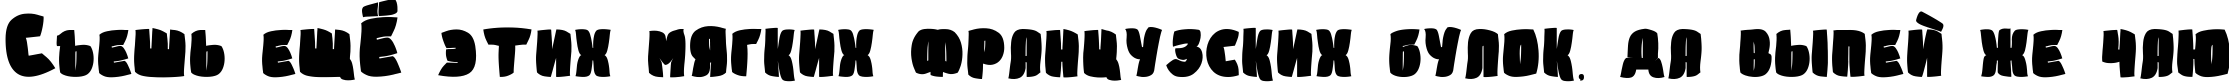 Пример написания шрифтом Sumkin freetype MRfrukta 2010 текста на русском